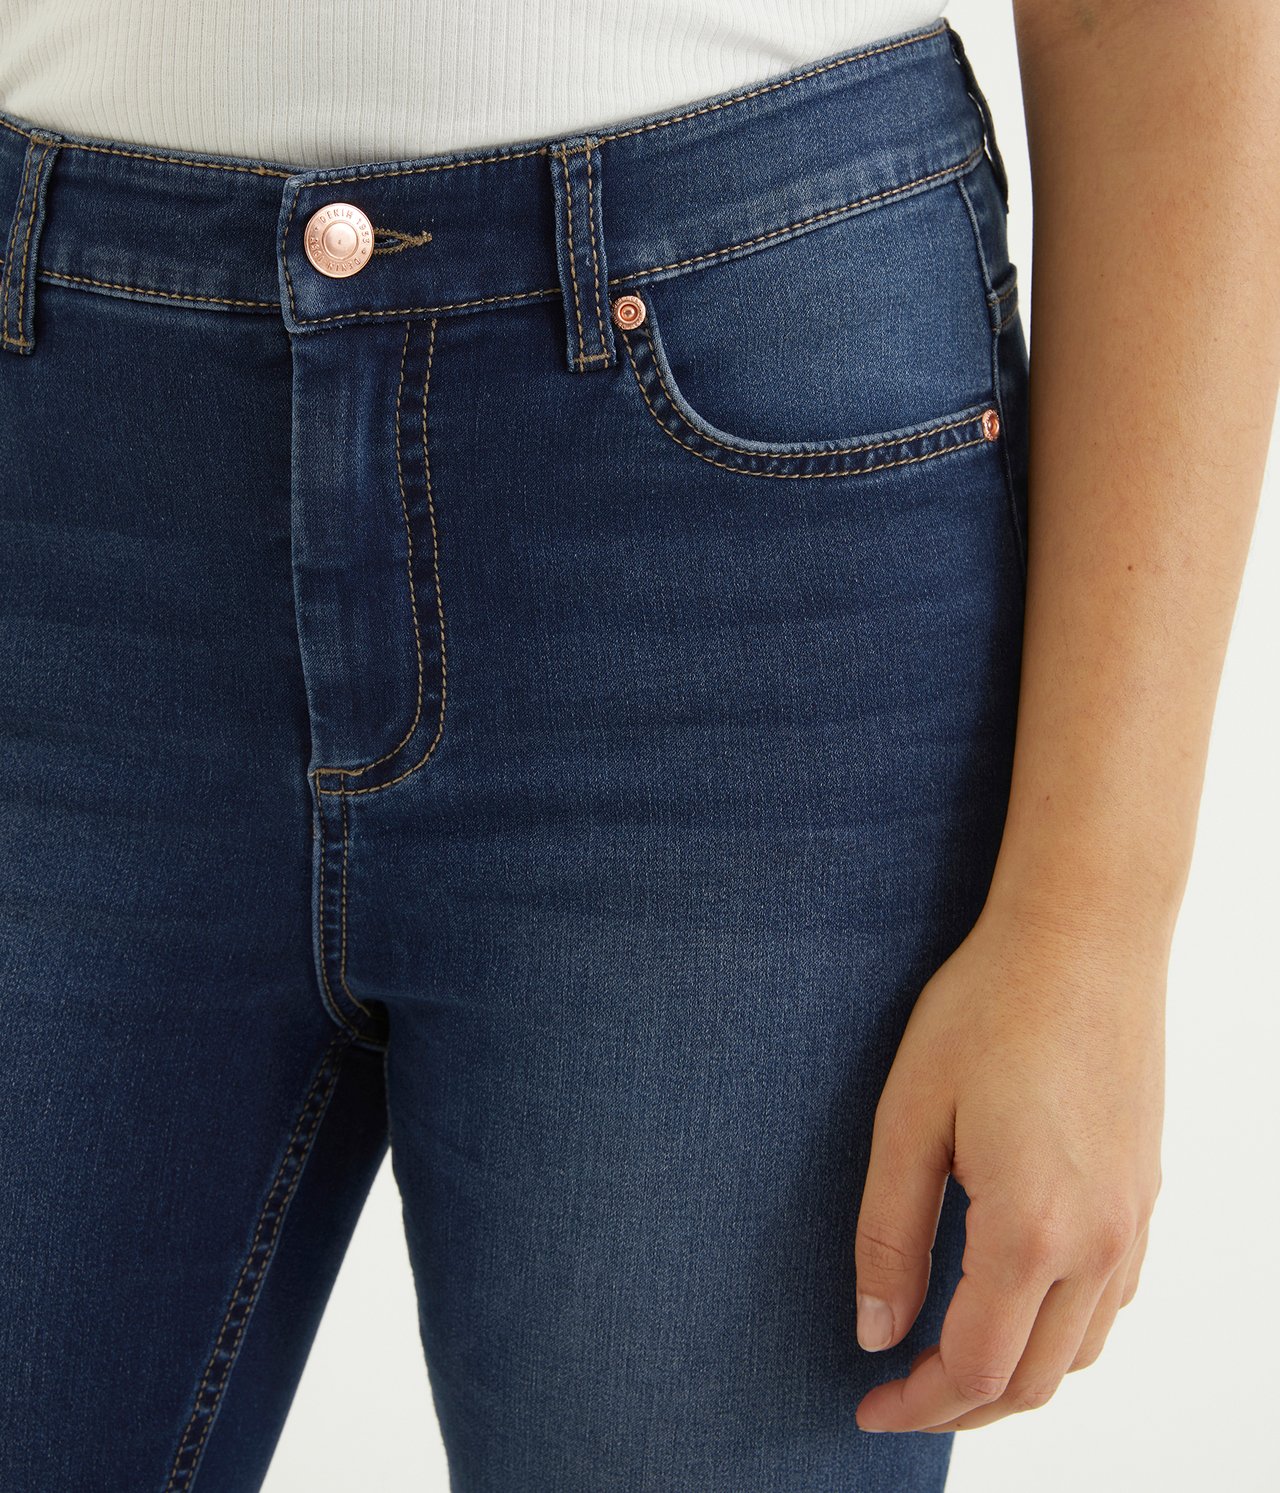 Super slim jeans short leg Mørk denim - null - 3